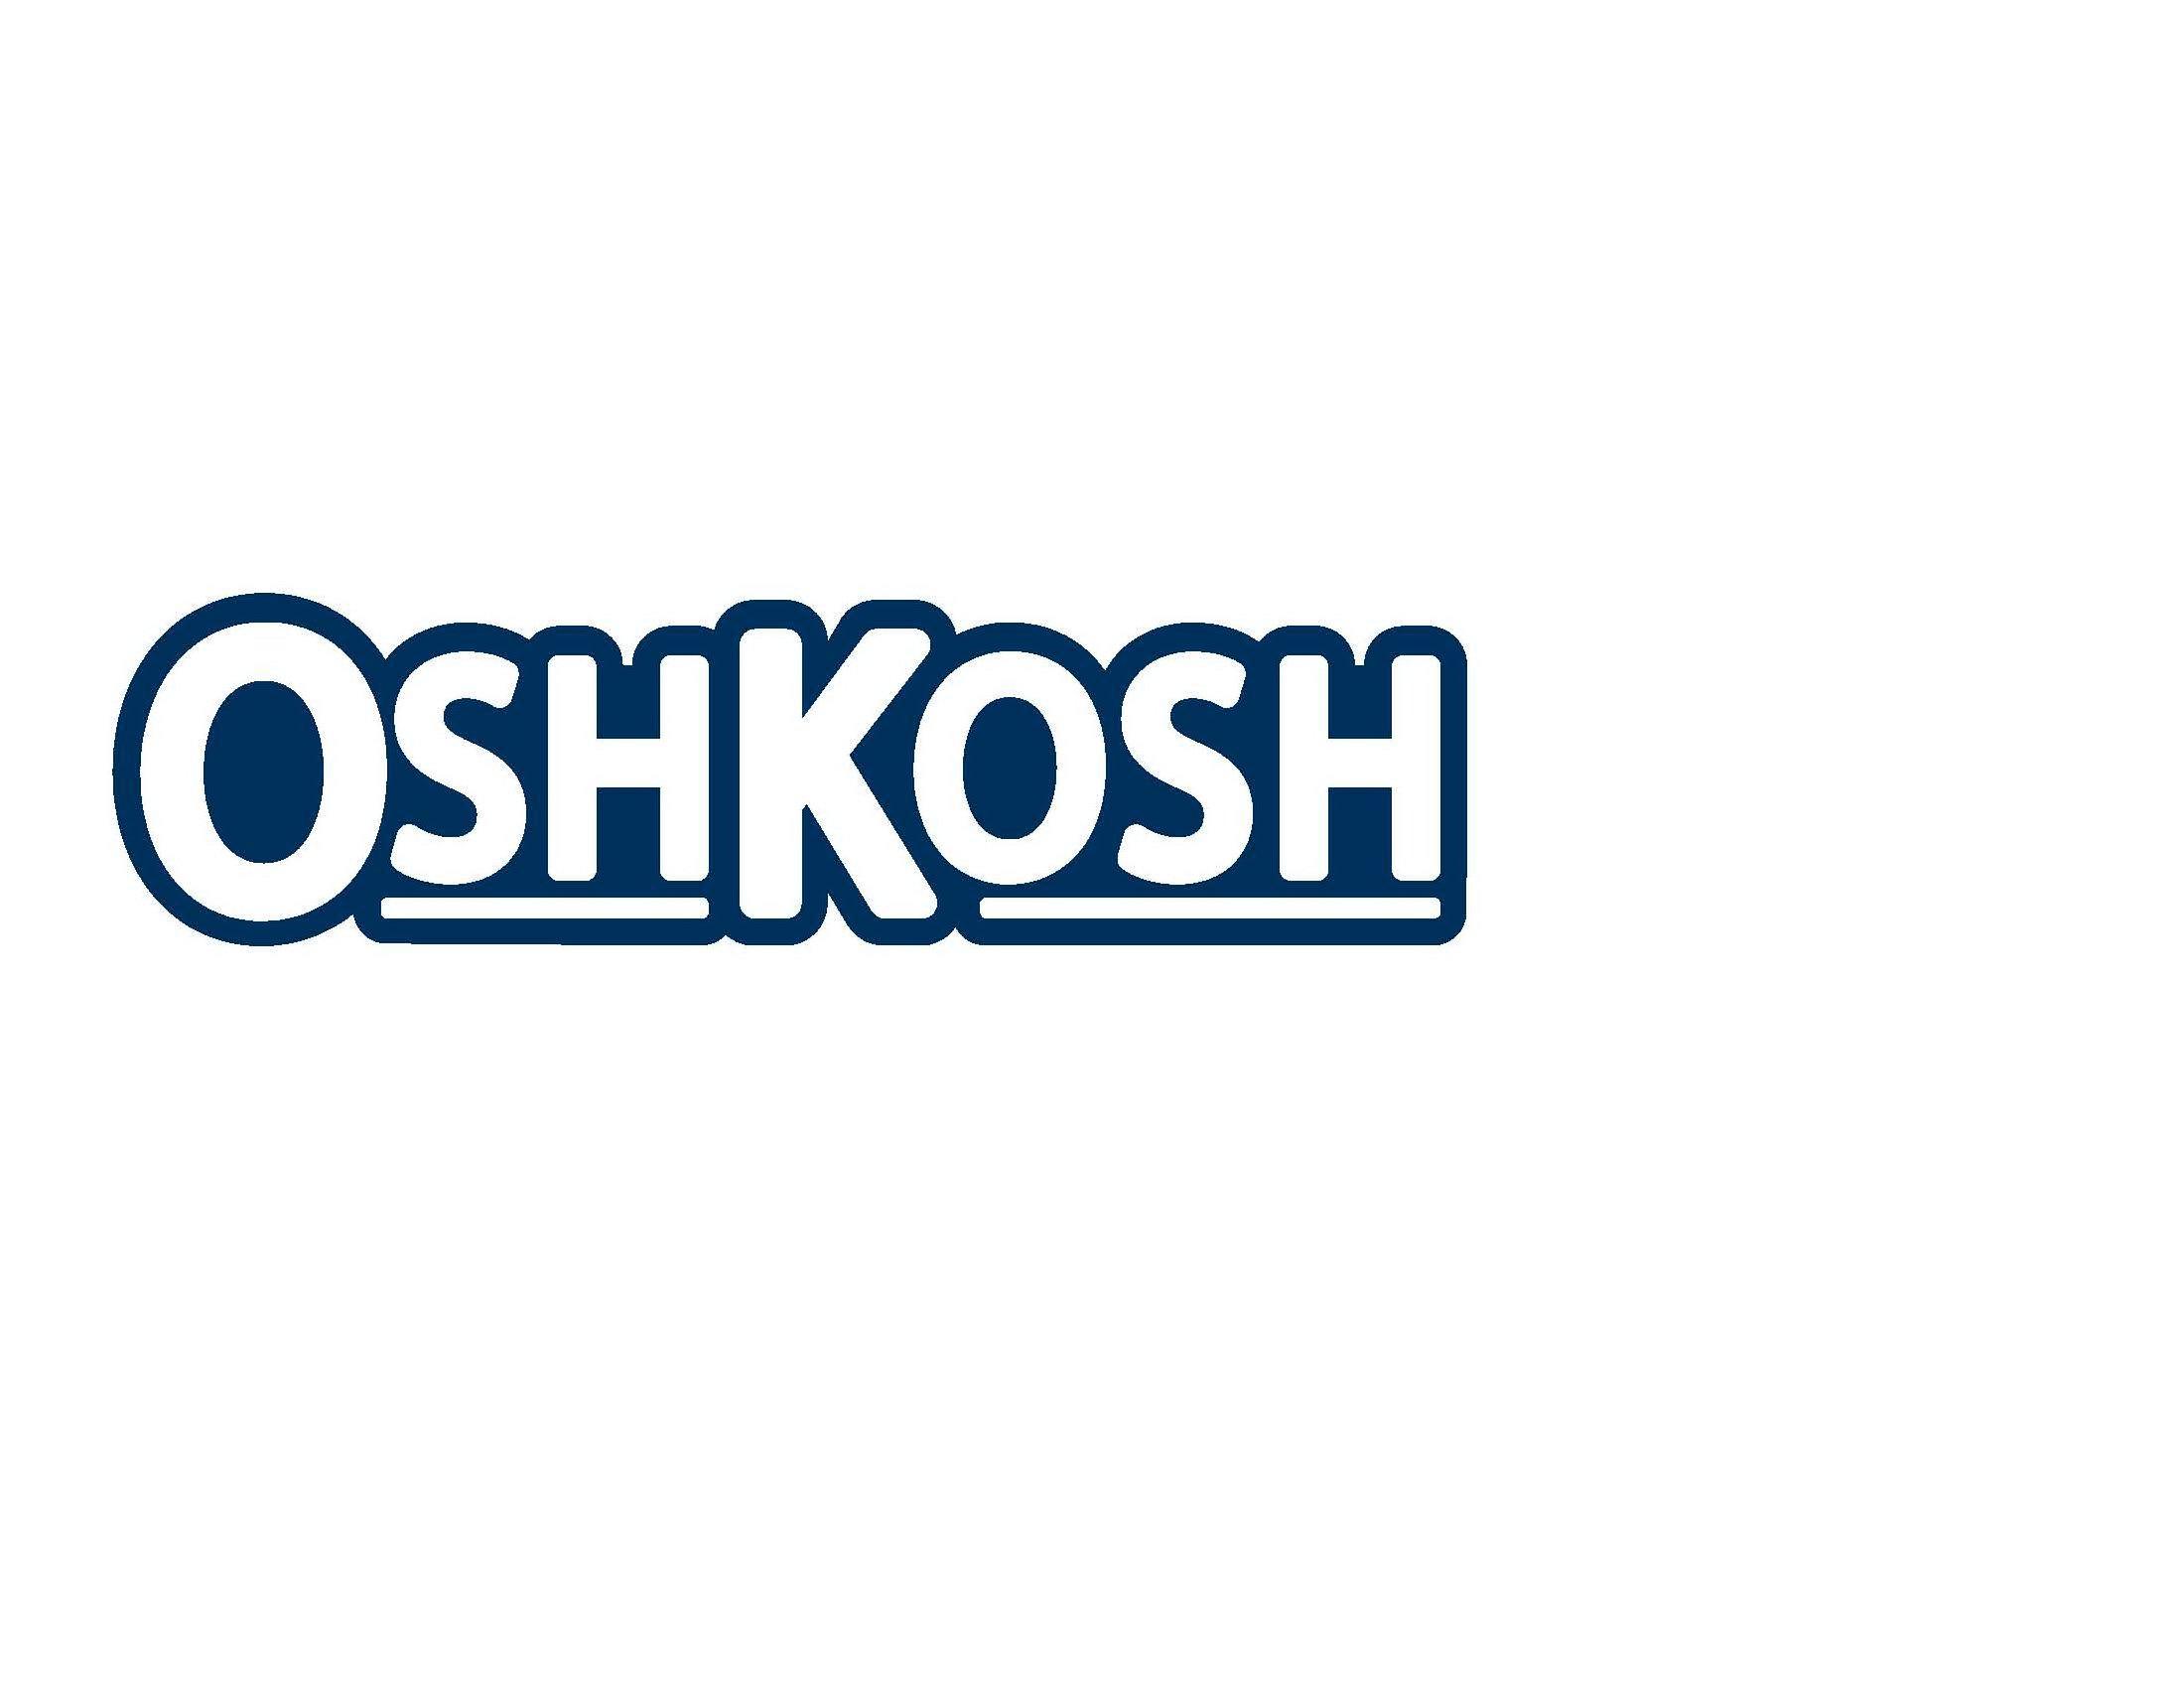 Trademark Logo OSHKOSH